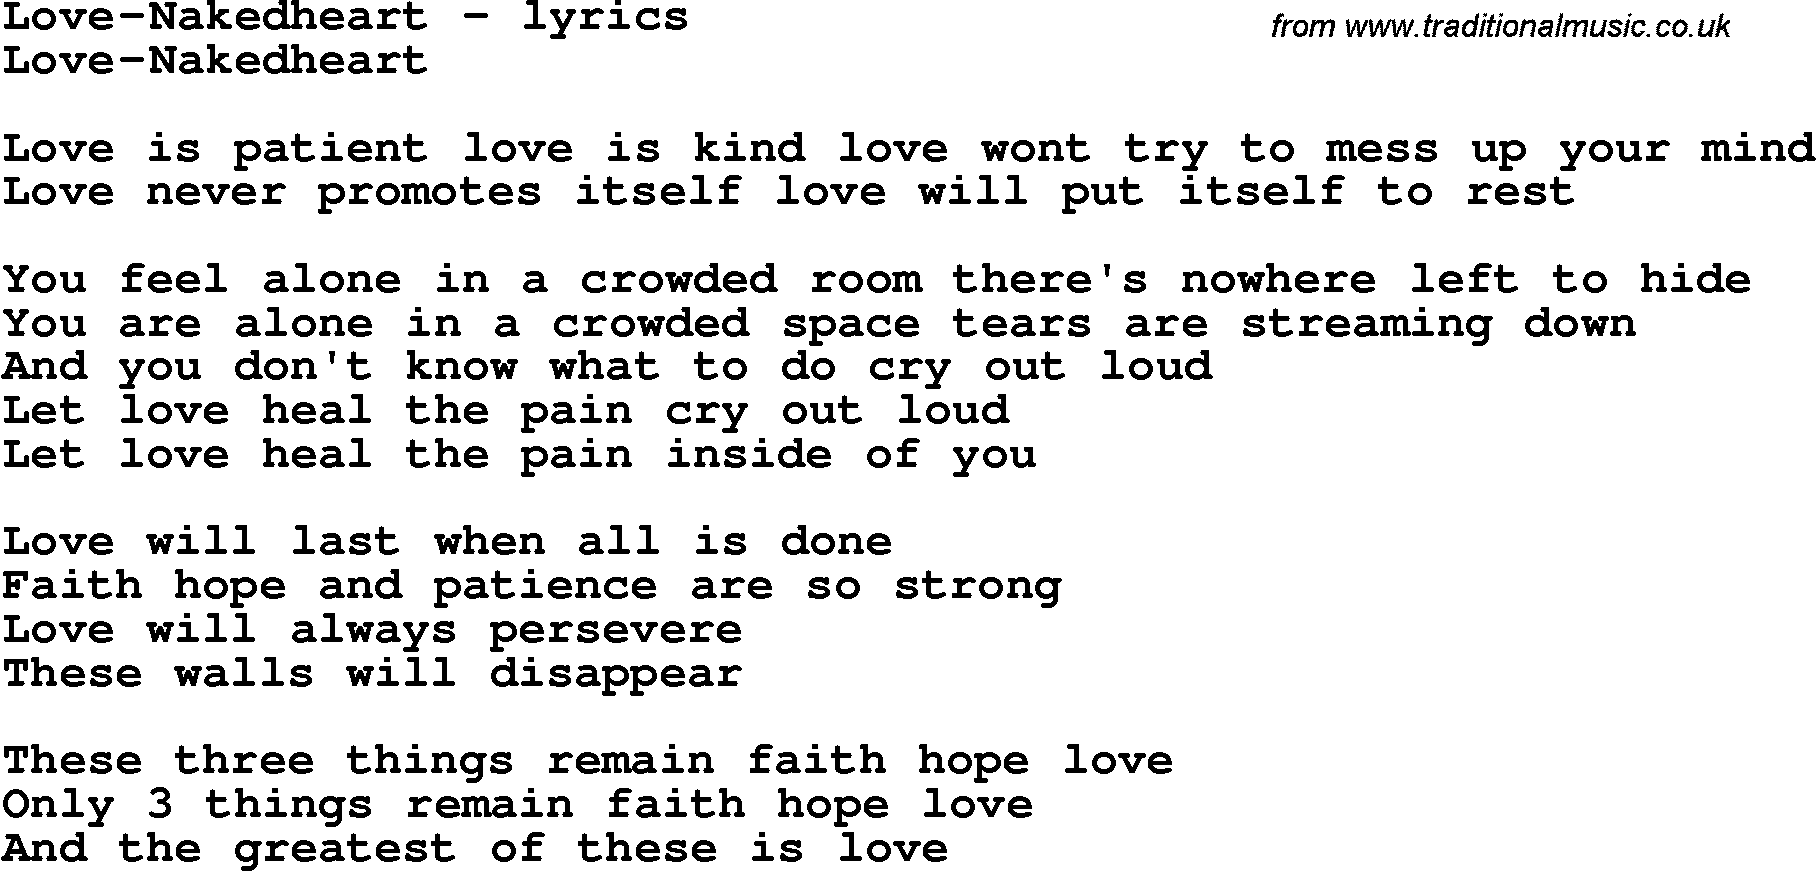 Love Song Lyrics for: Love-Nakedheart